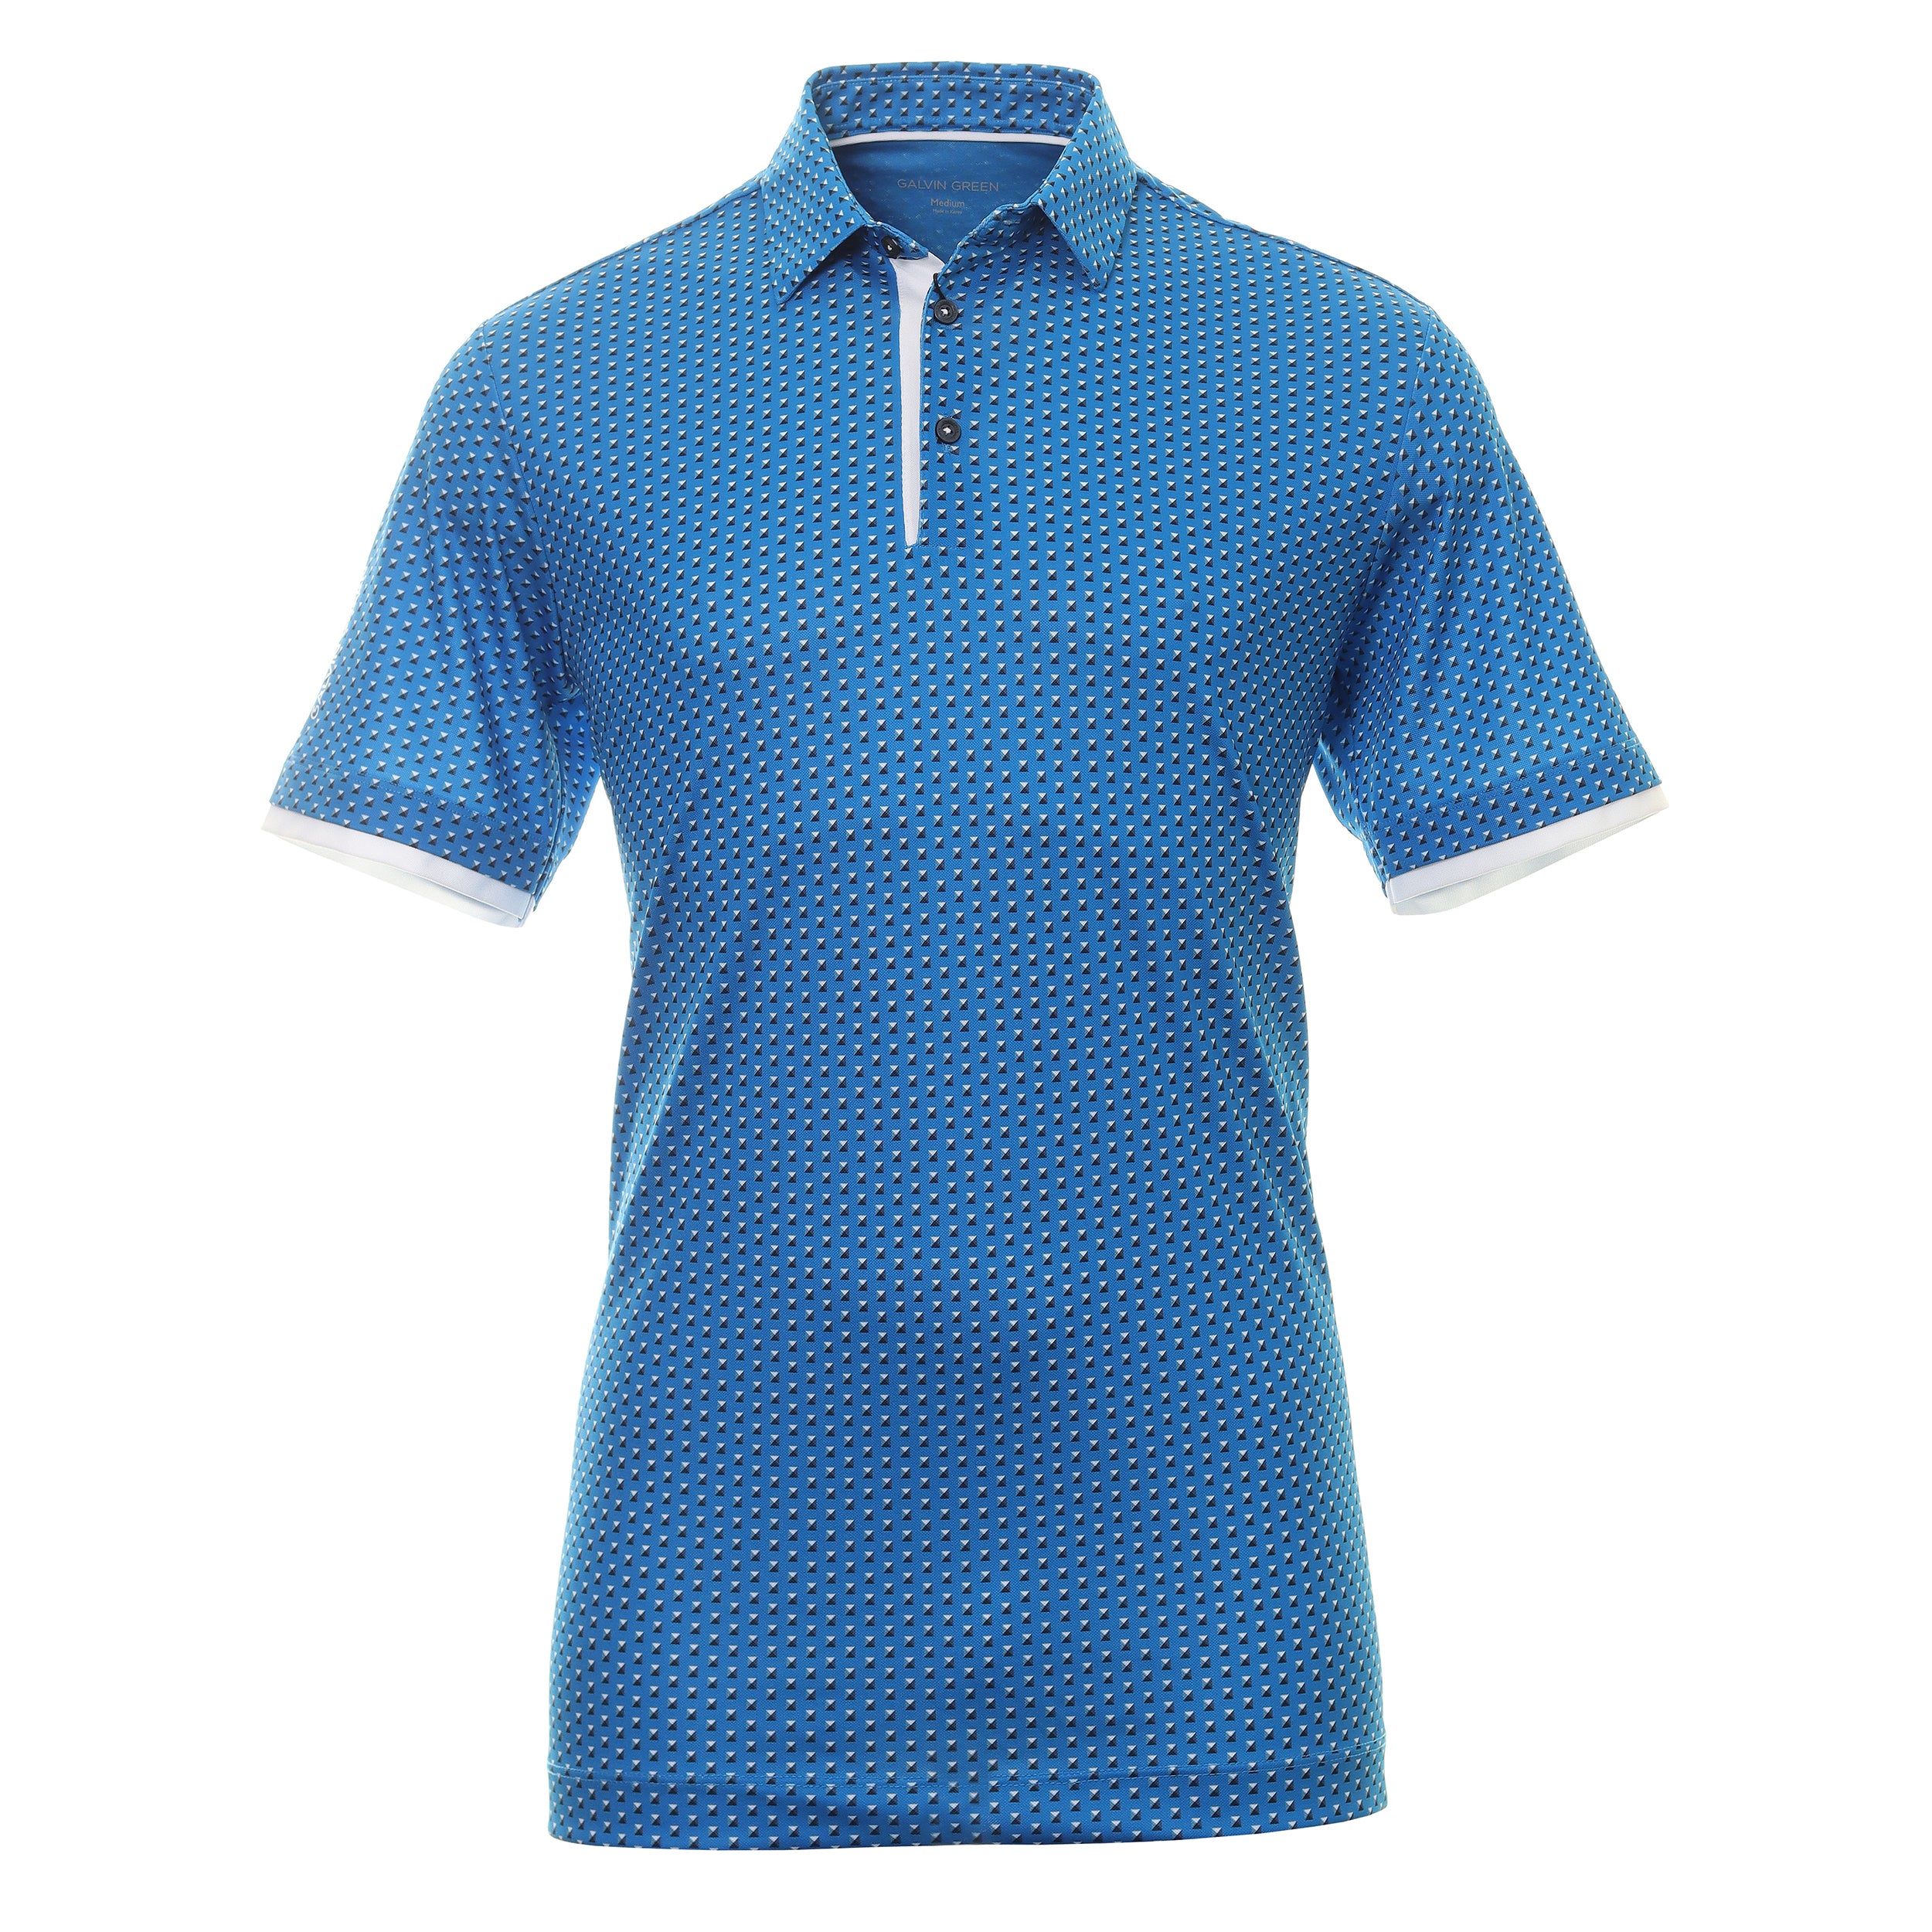 Galvin Green Mark Ventil8+ Golf Shirt G1371 Blue White 61 | Function18